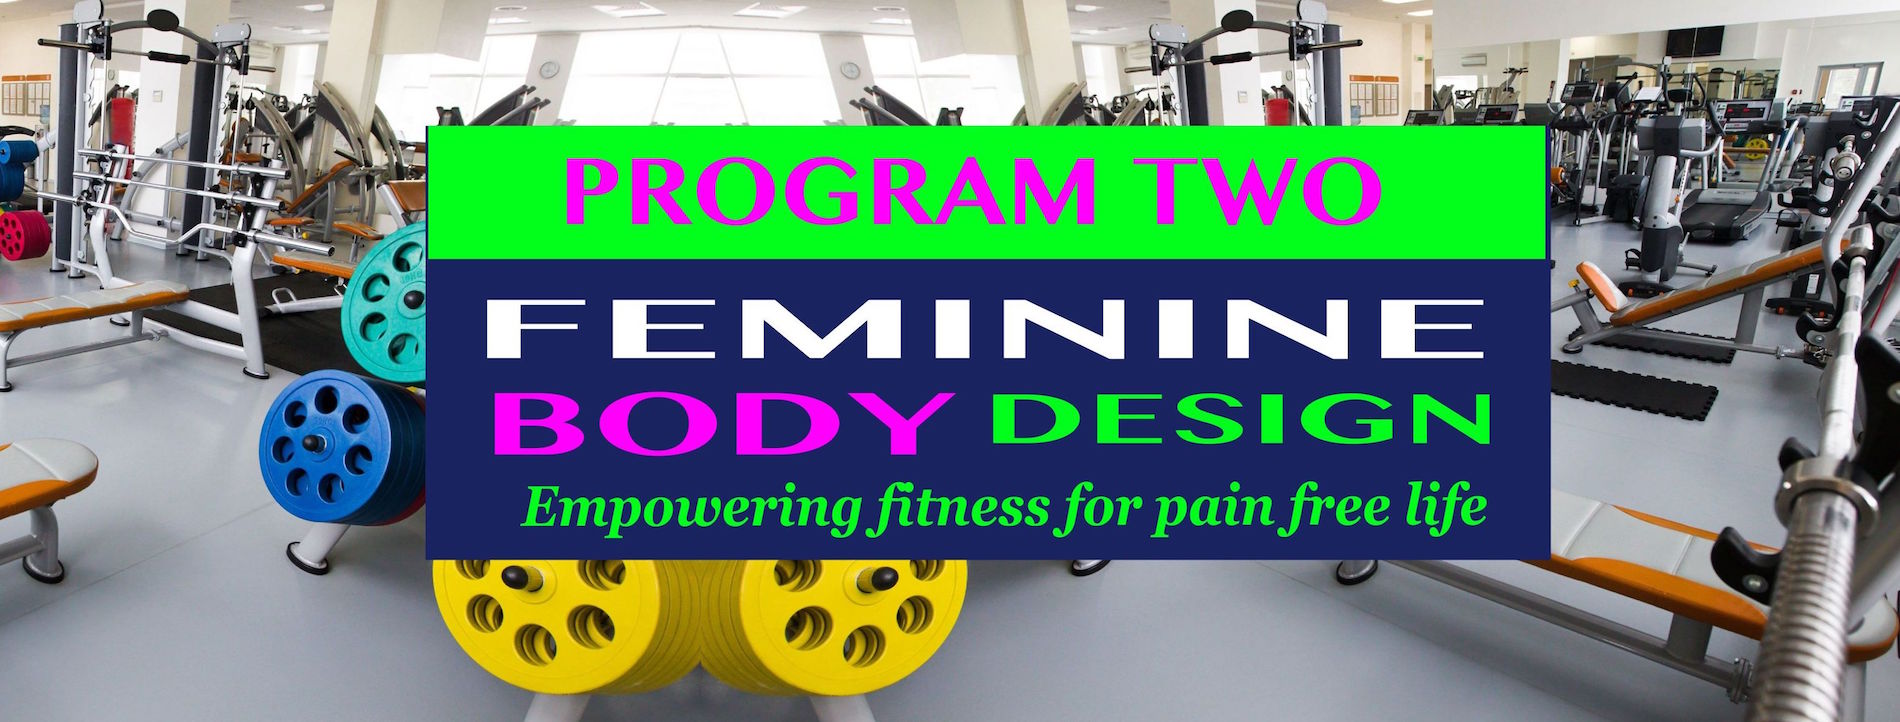 Feminine Body Design Program 2